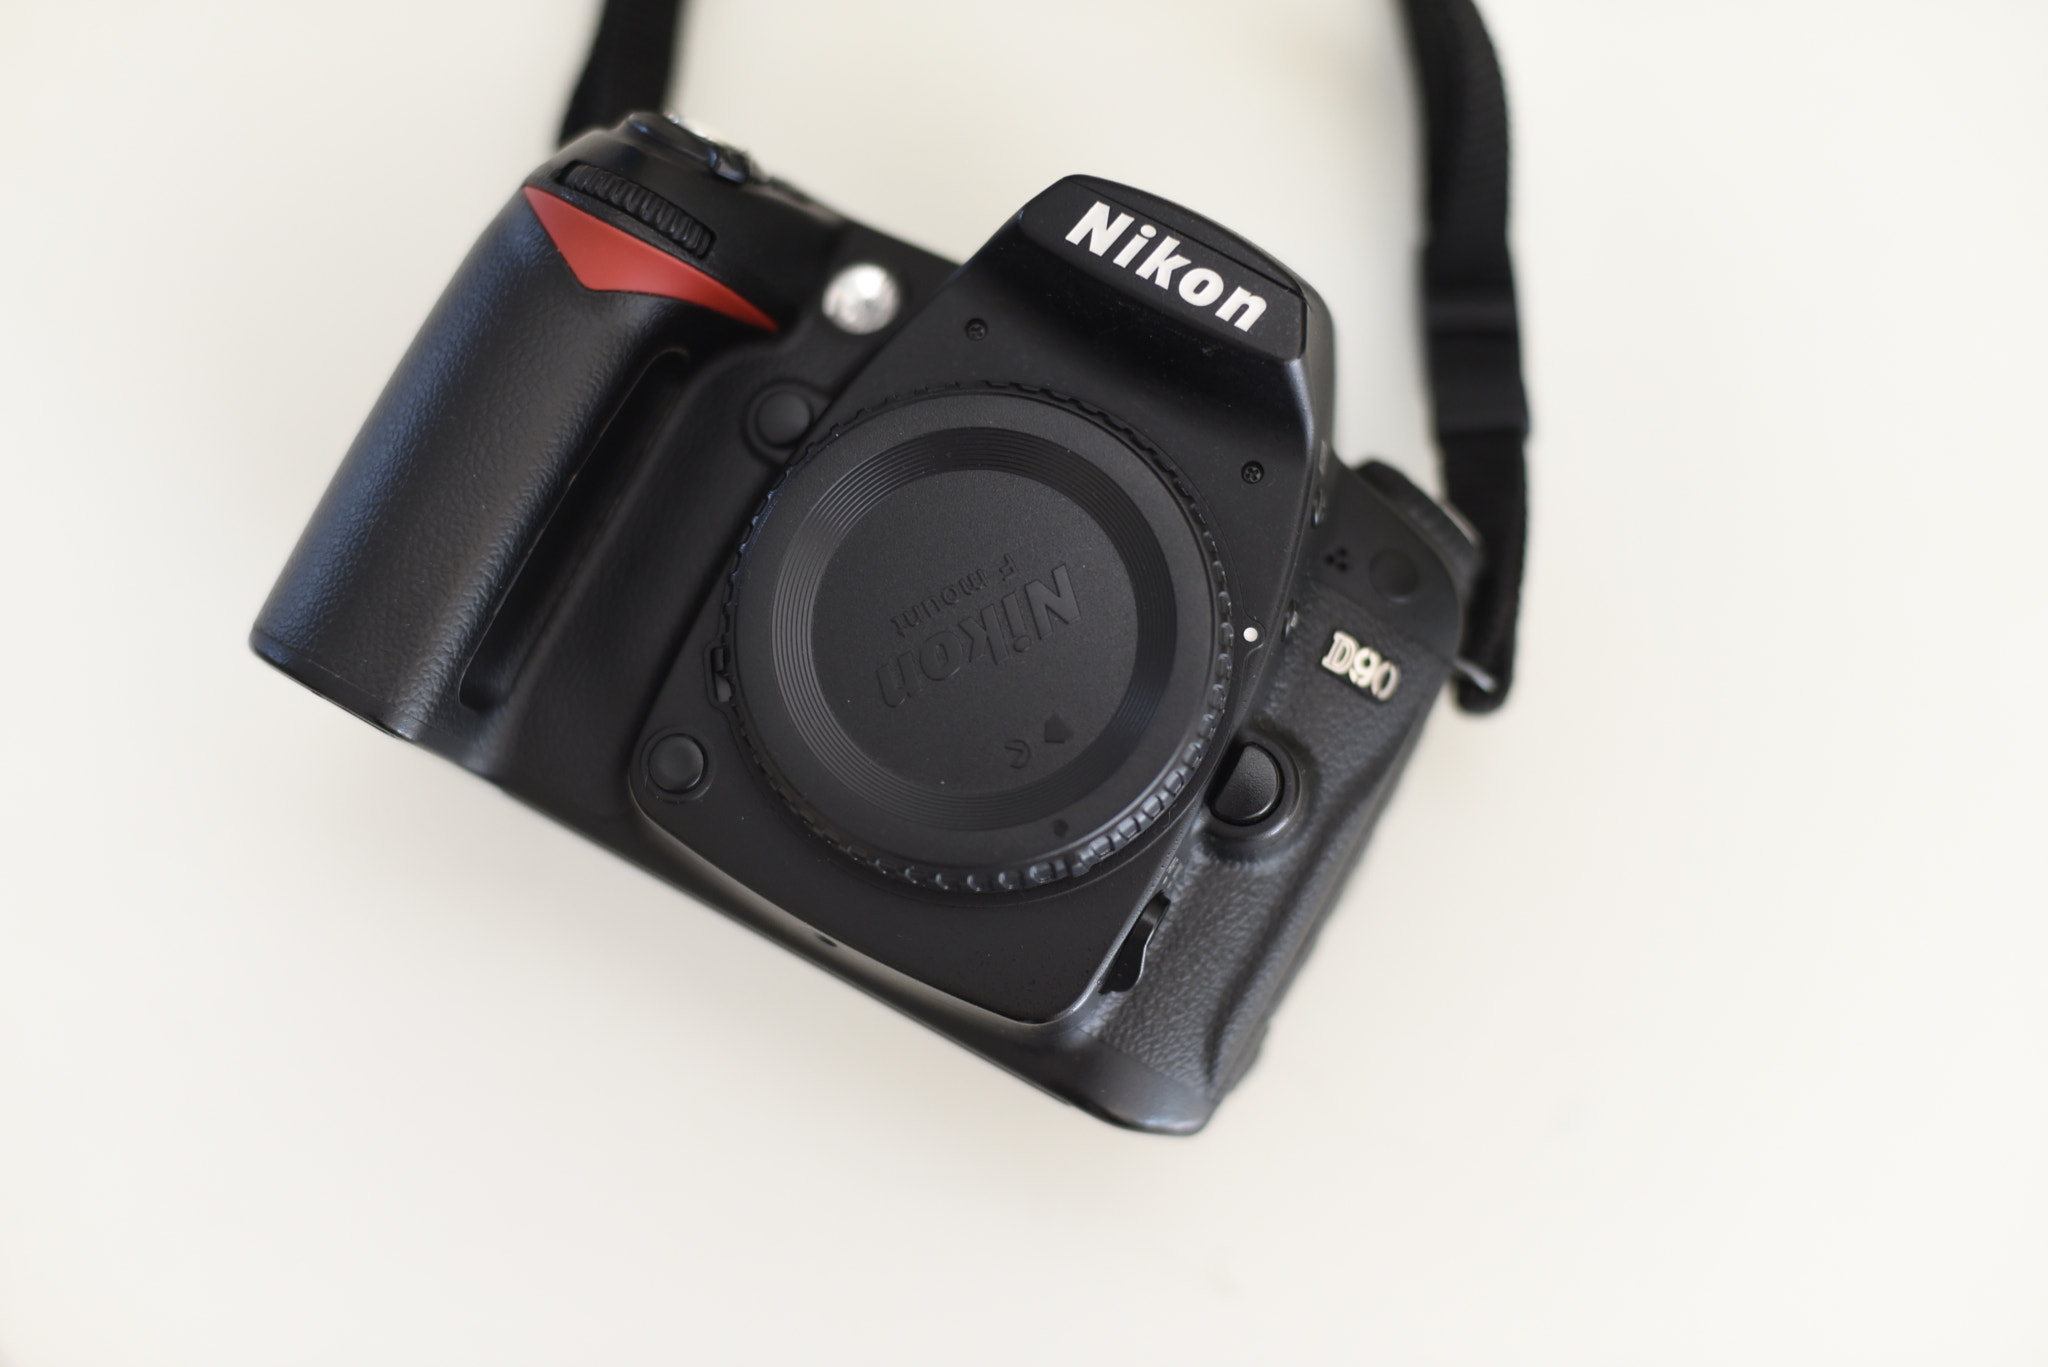 Nikon AF Nikkor 50mm F1.4D sample photo. Enjoy the little thing photography